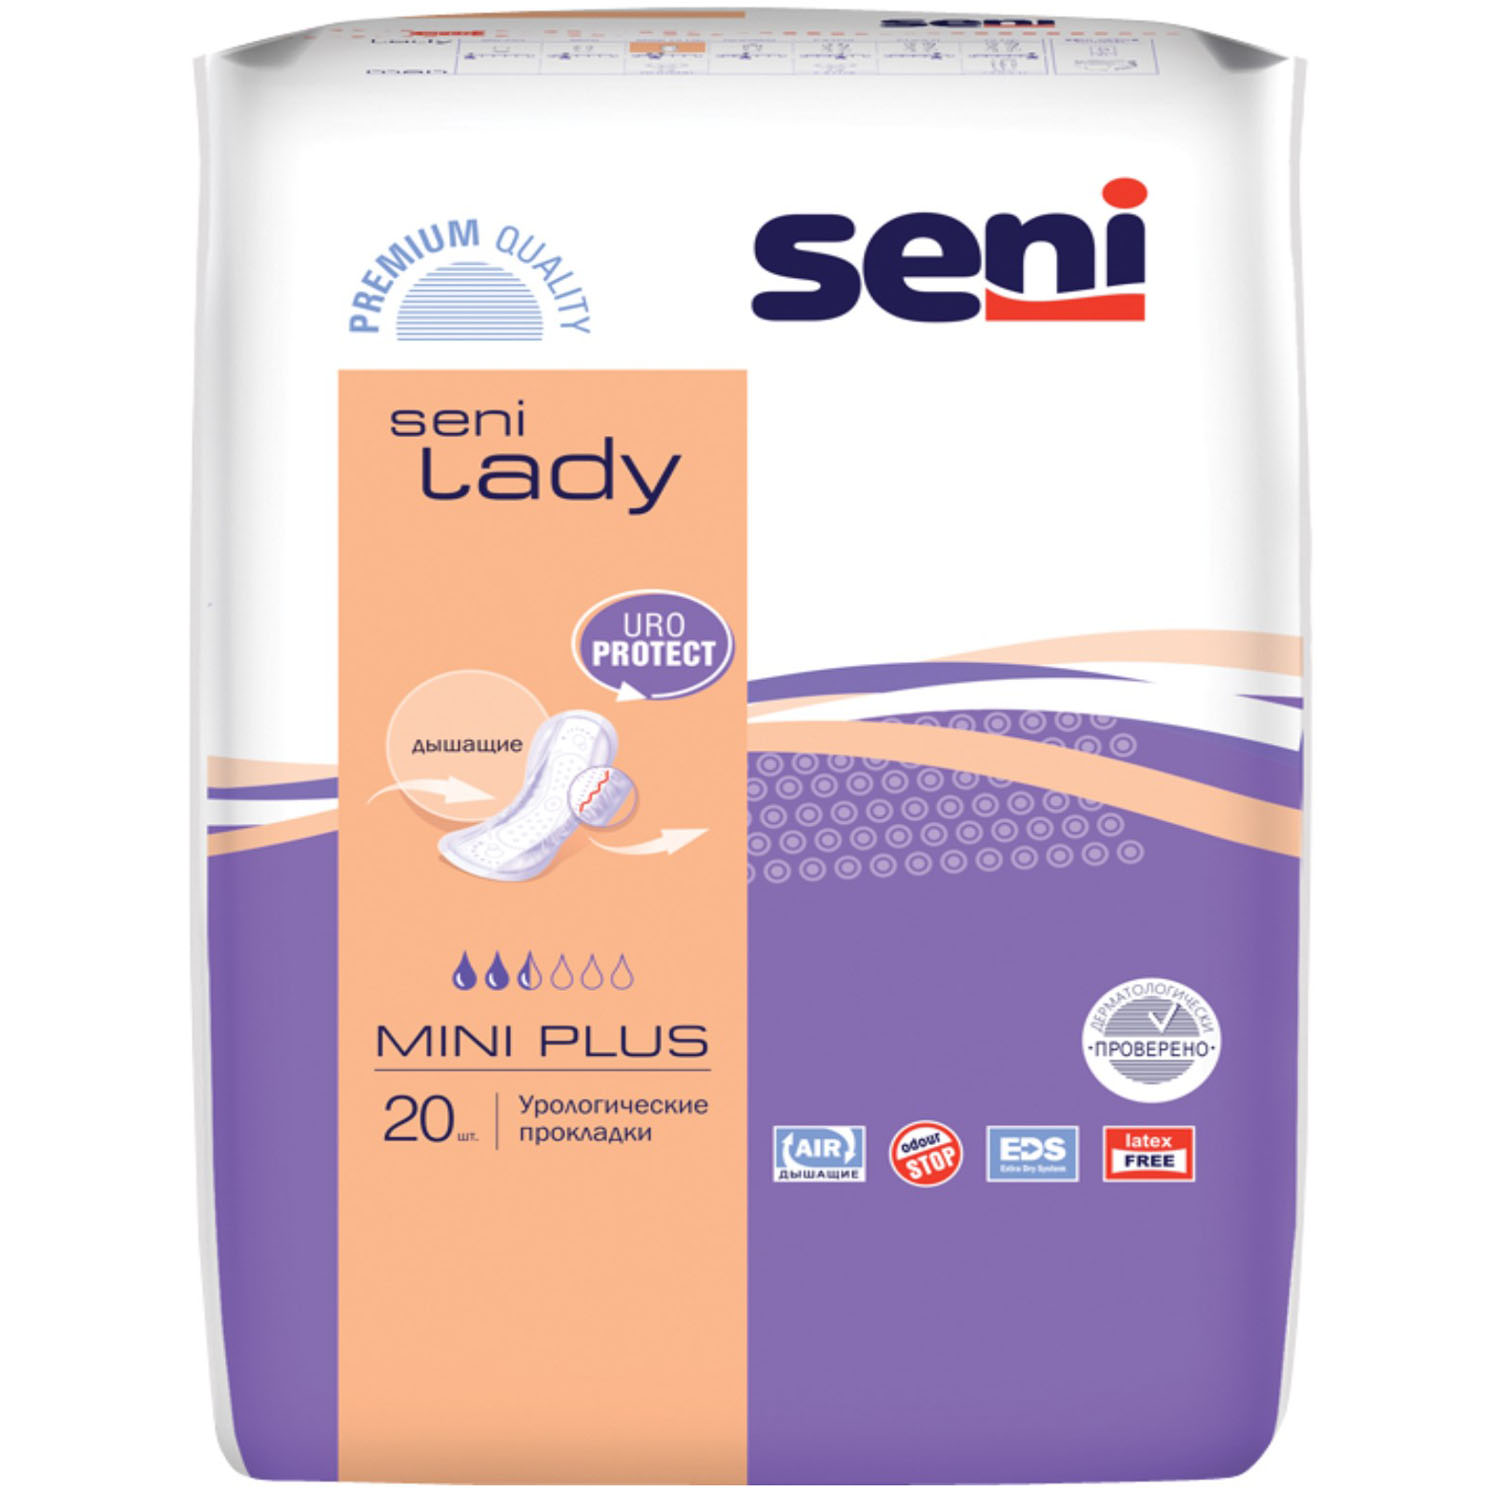 Seni Урологические прокладки для женщин Mini Plus 10х25,5 см, 20 шт (Seni, Lady)